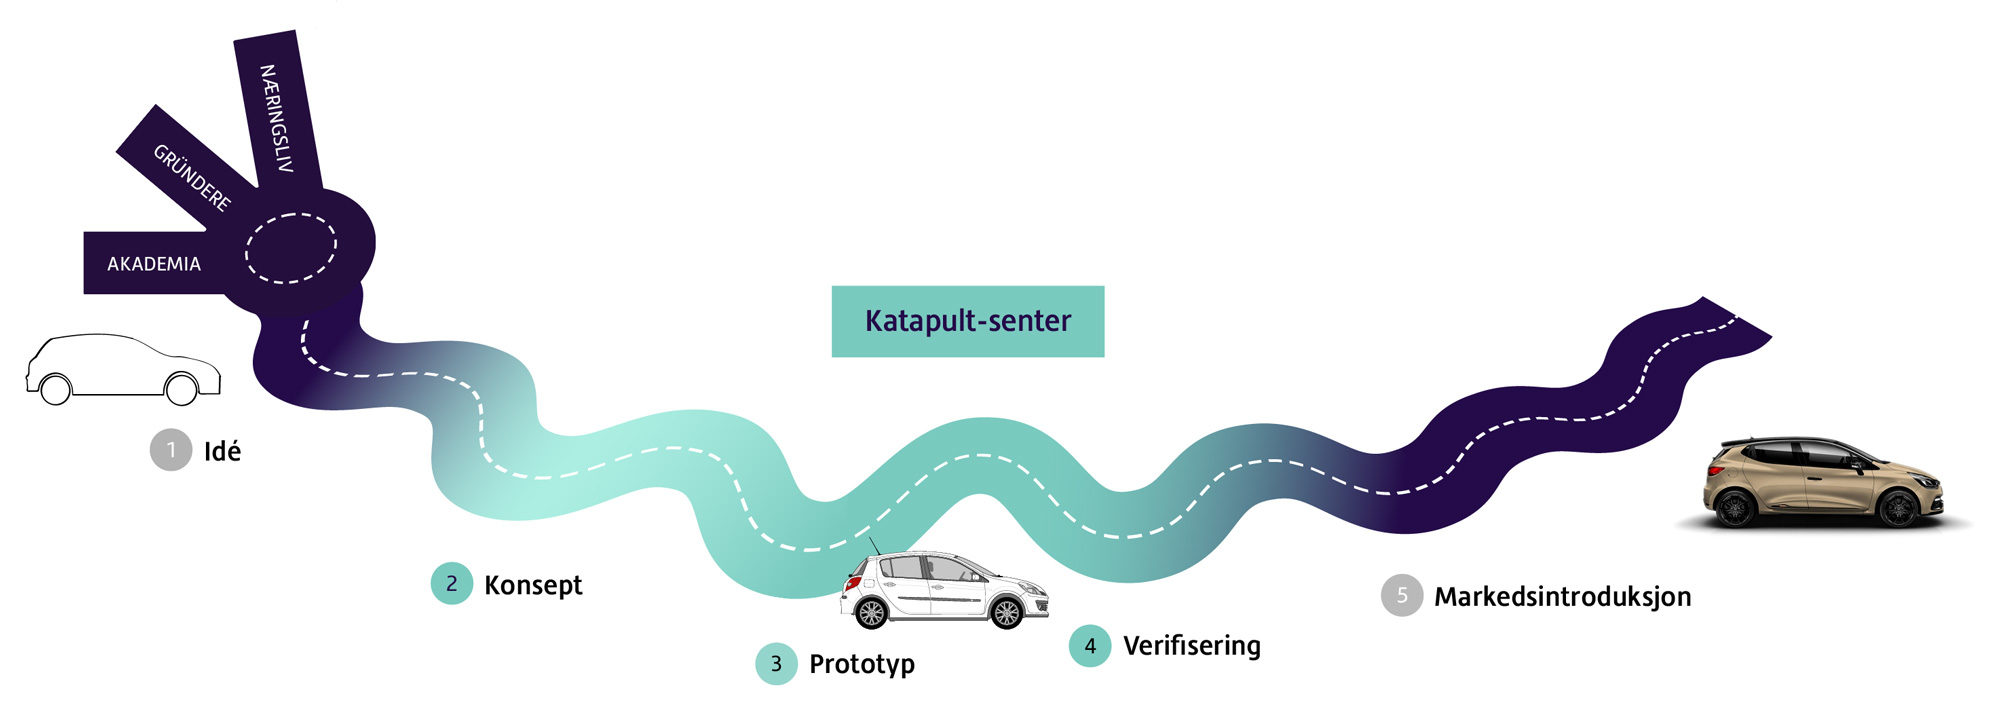 Bildet viser en illustrasjon av Veien videre for Norsk Katapult: Idé – Konsept – Prototyp – Verifisering – Markedsintroduksjon